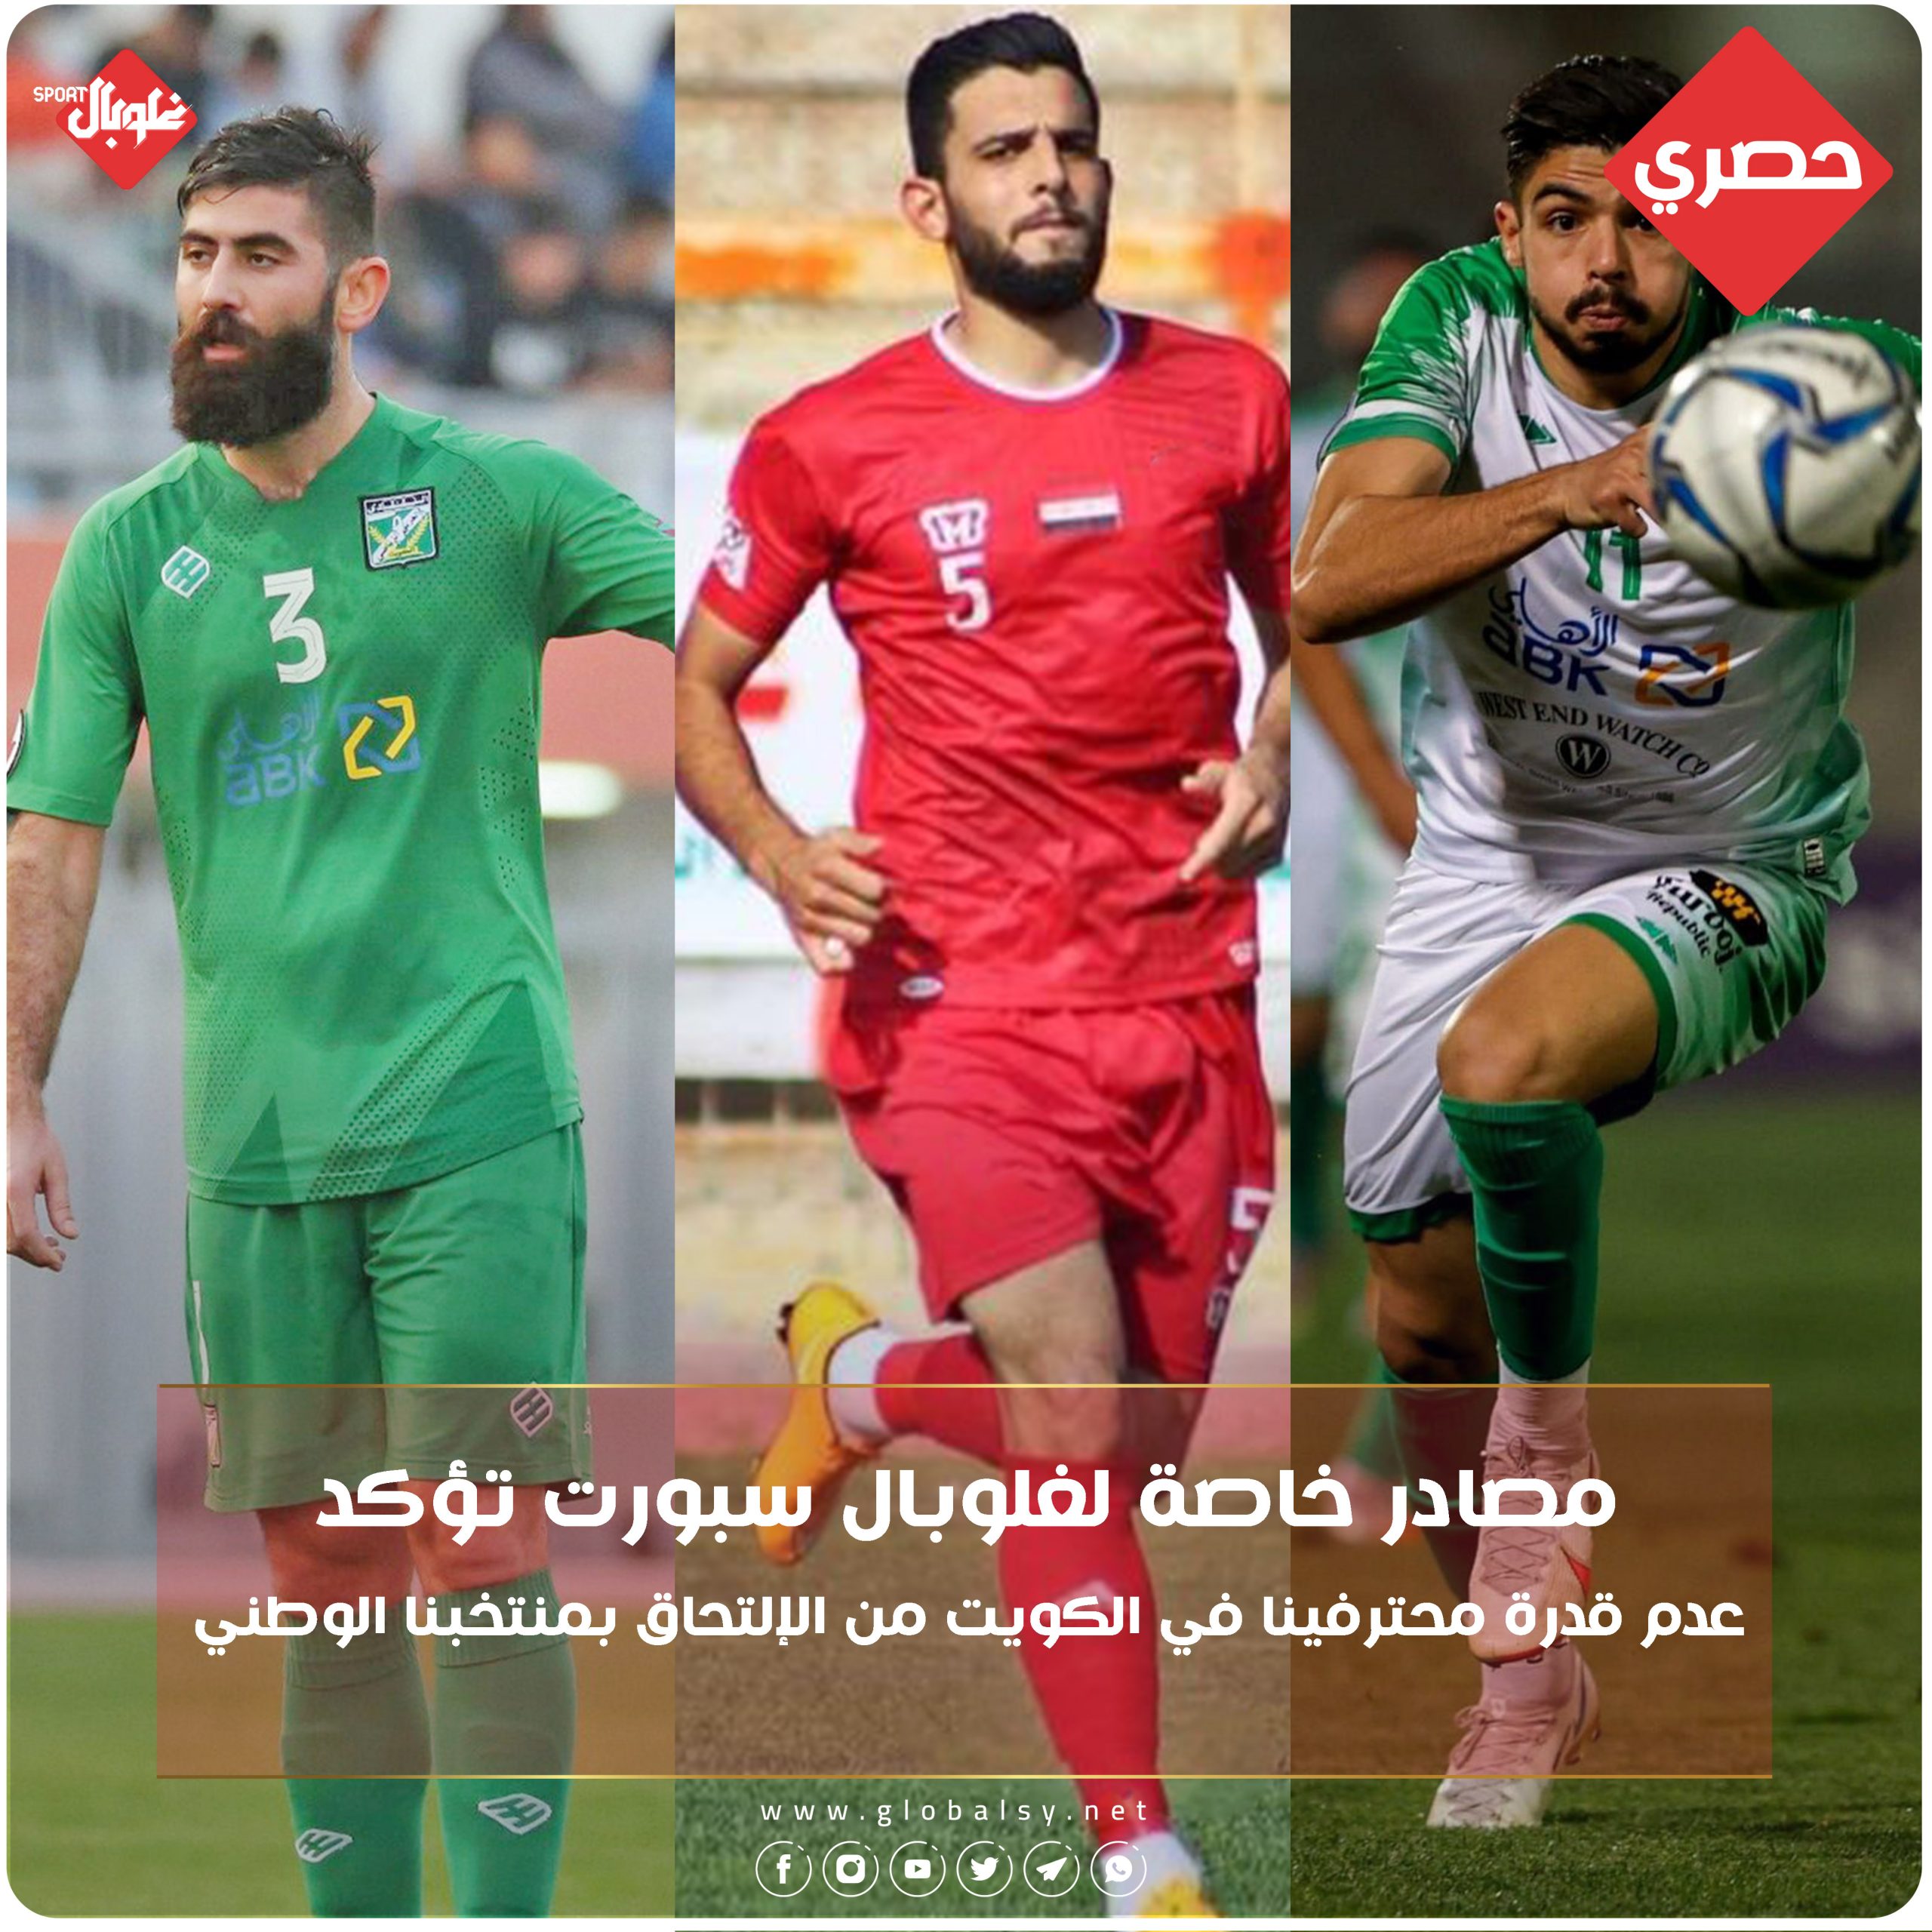 شبكة غلوبال الإعلامية تكشف حقيقة مشاركة اللاعبين السوريين في الكويت مع المنتخب